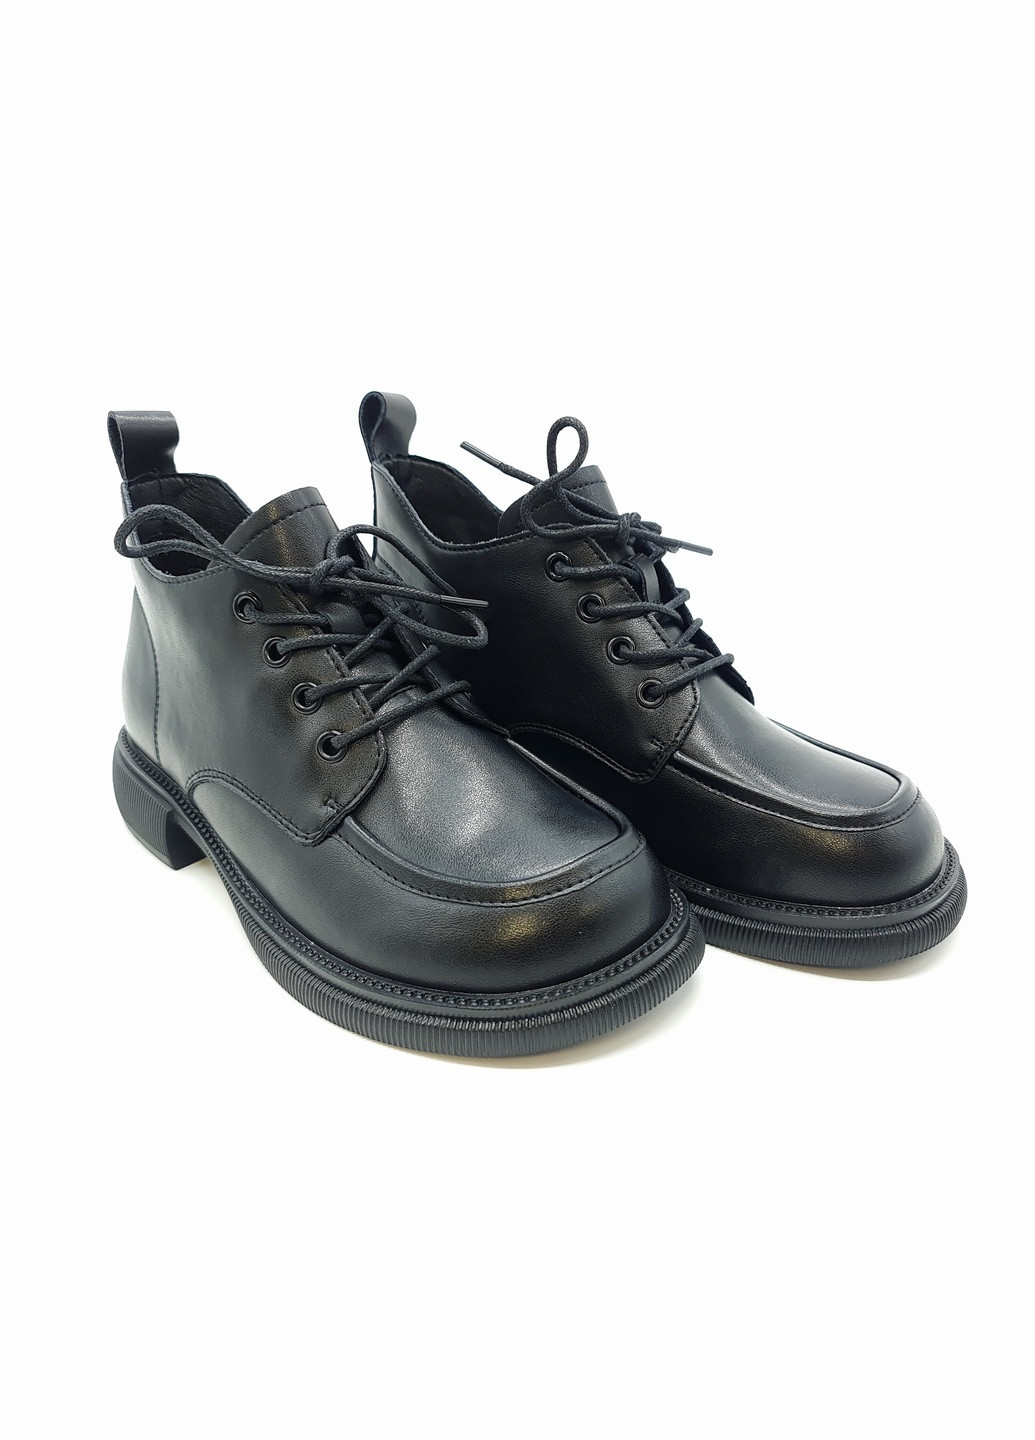 Осенние женские ботинки черные кожаные ya-18-6 23 см (р) Yalasou